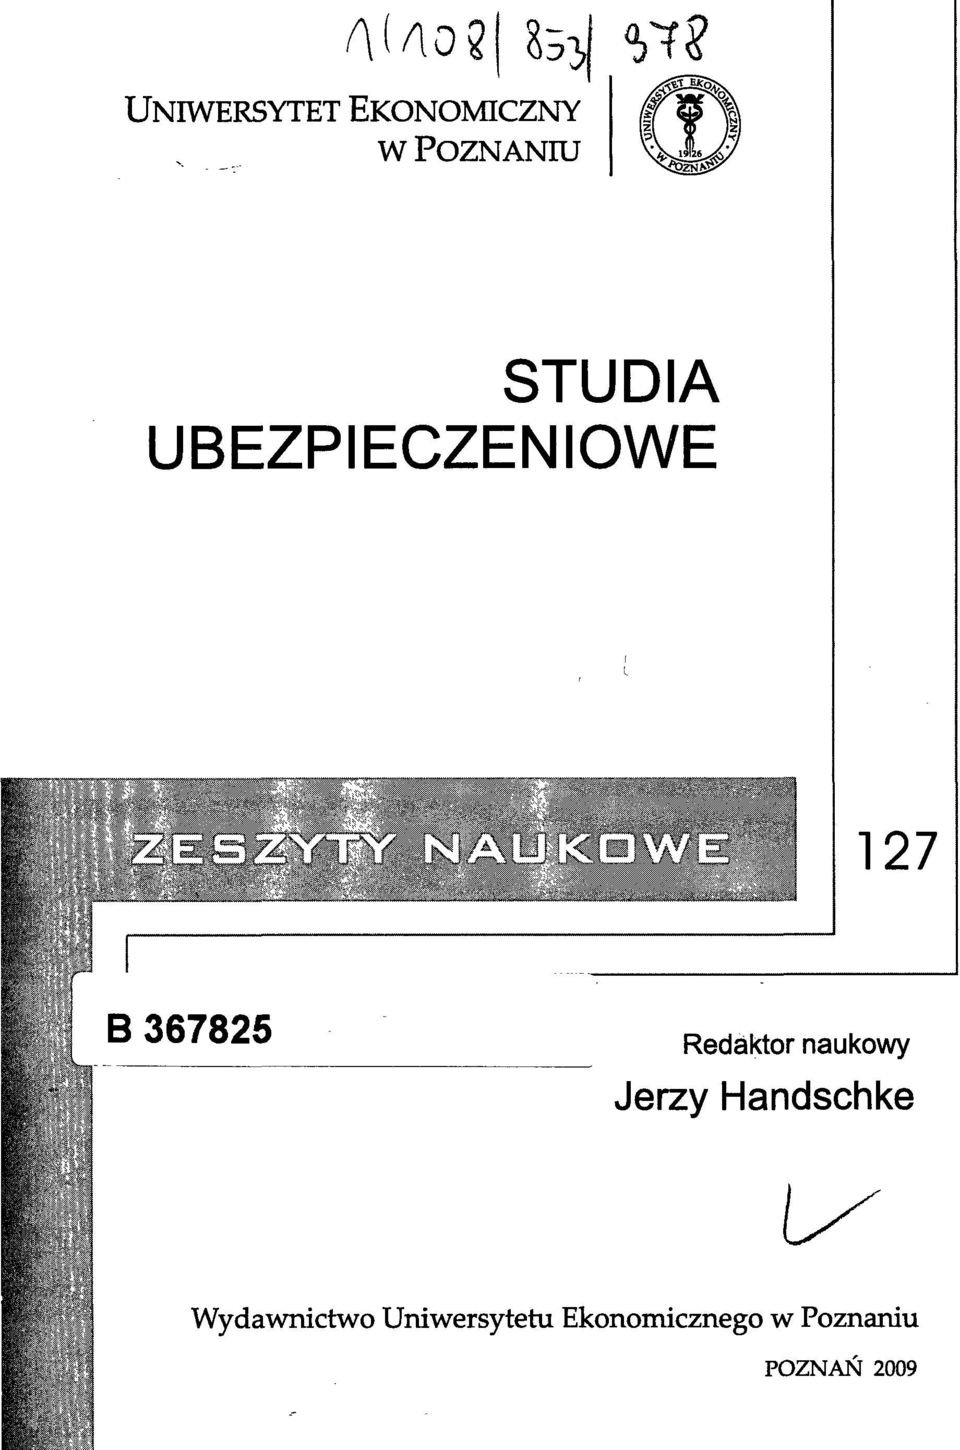 naukowy Jerzy Handschke Wydawnictwo